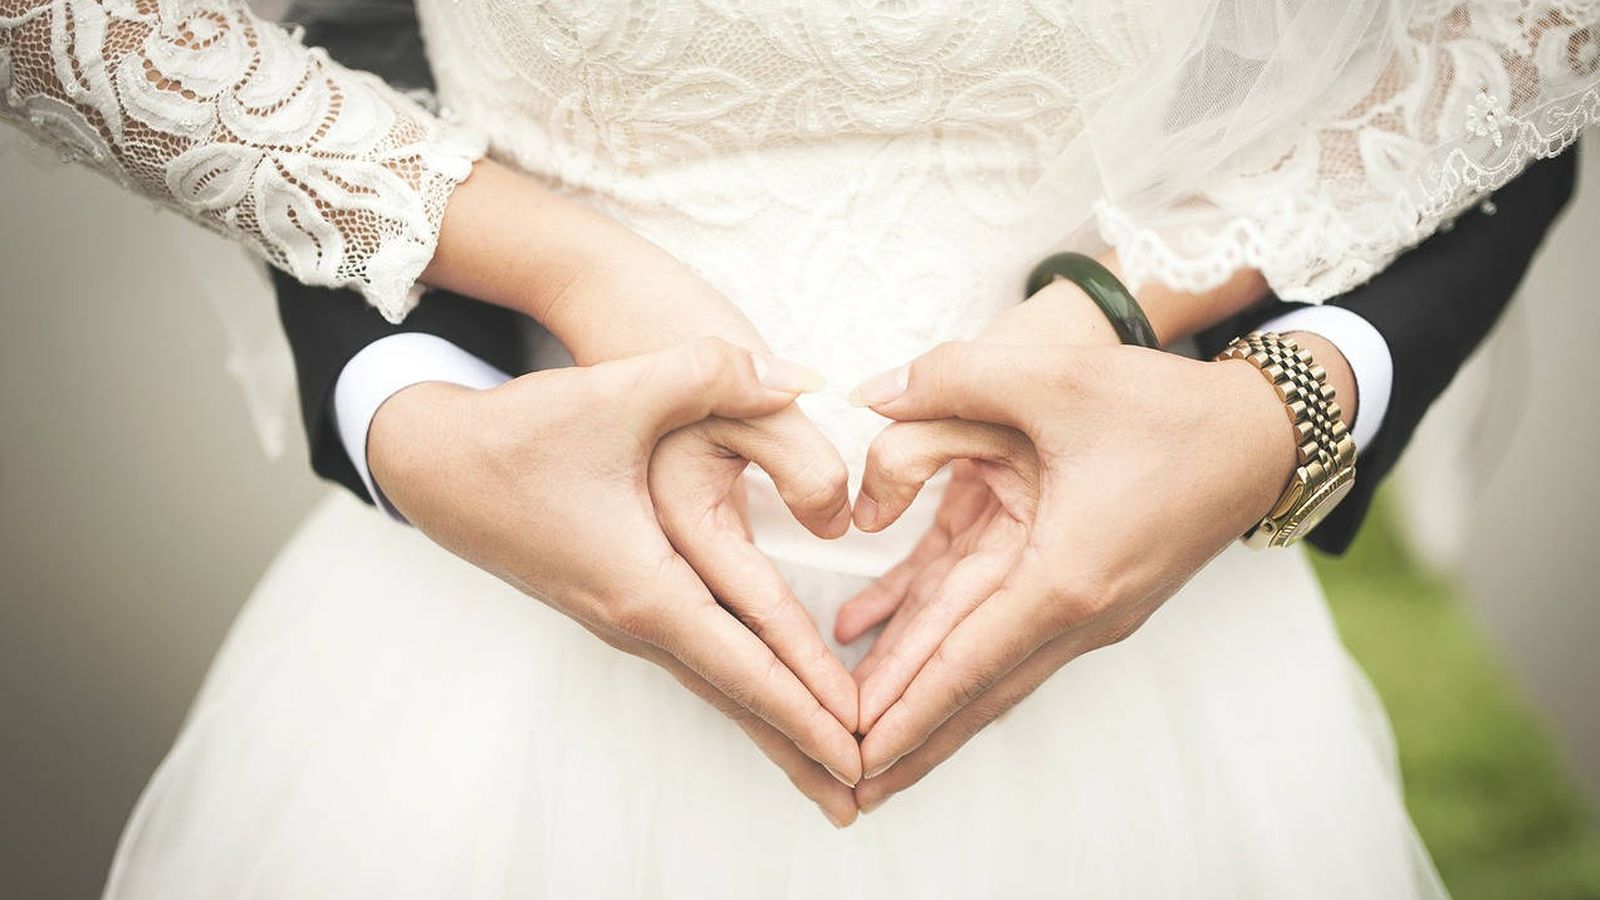 Foto: La boda perfecta no es fácil de conseguir... aunque la novia se dedique en cuerpo y alma a ello (Foto: Pixabay)